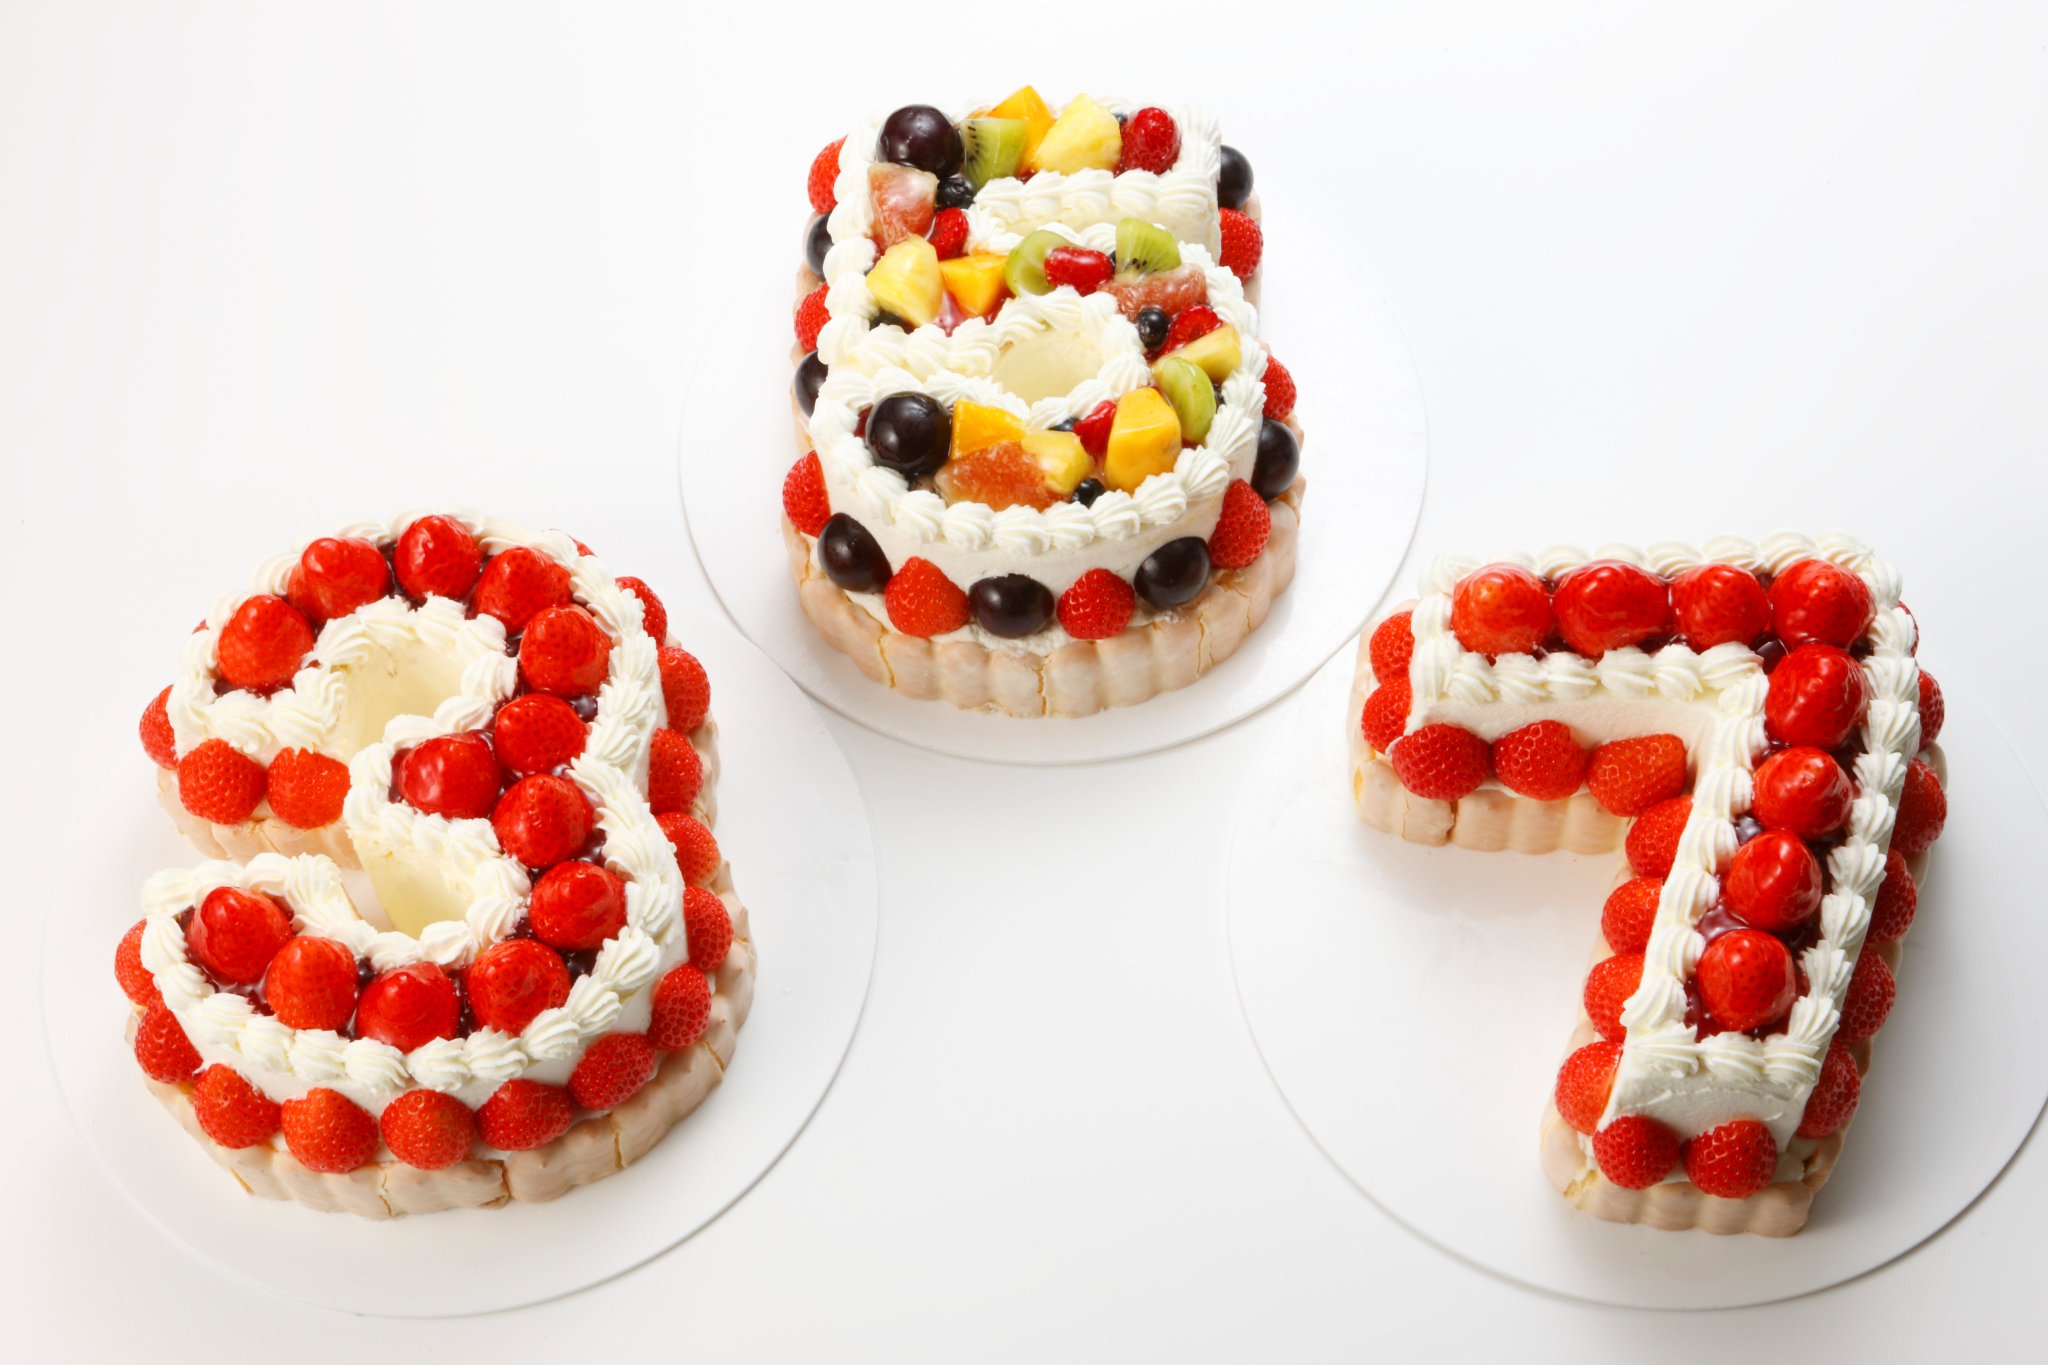 ケーニヒスクローネ 公式 商品のご案内 ケーニヒスクローネでは様々な別注ケーキを取り扱っております このように数字型の ケーキもご用意できます お誕生日や記念日に是非ご利用くださいませ ケーニヒスクローネ Konigskrone クローネ